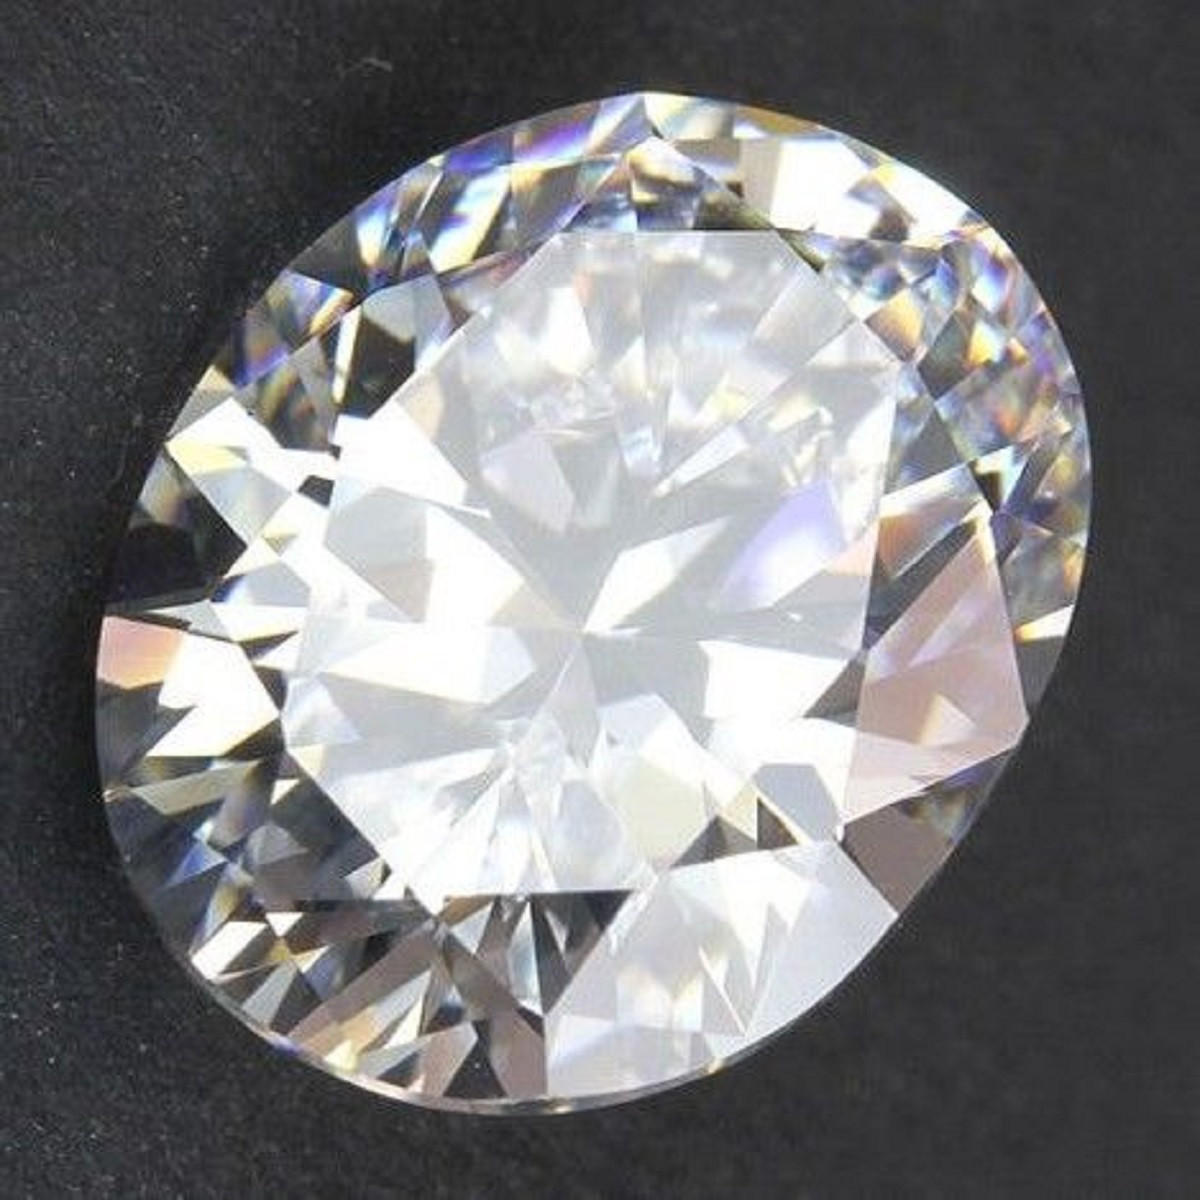 25mmx18mm artificial zircon round cut stunning white sapphire gemstone ...